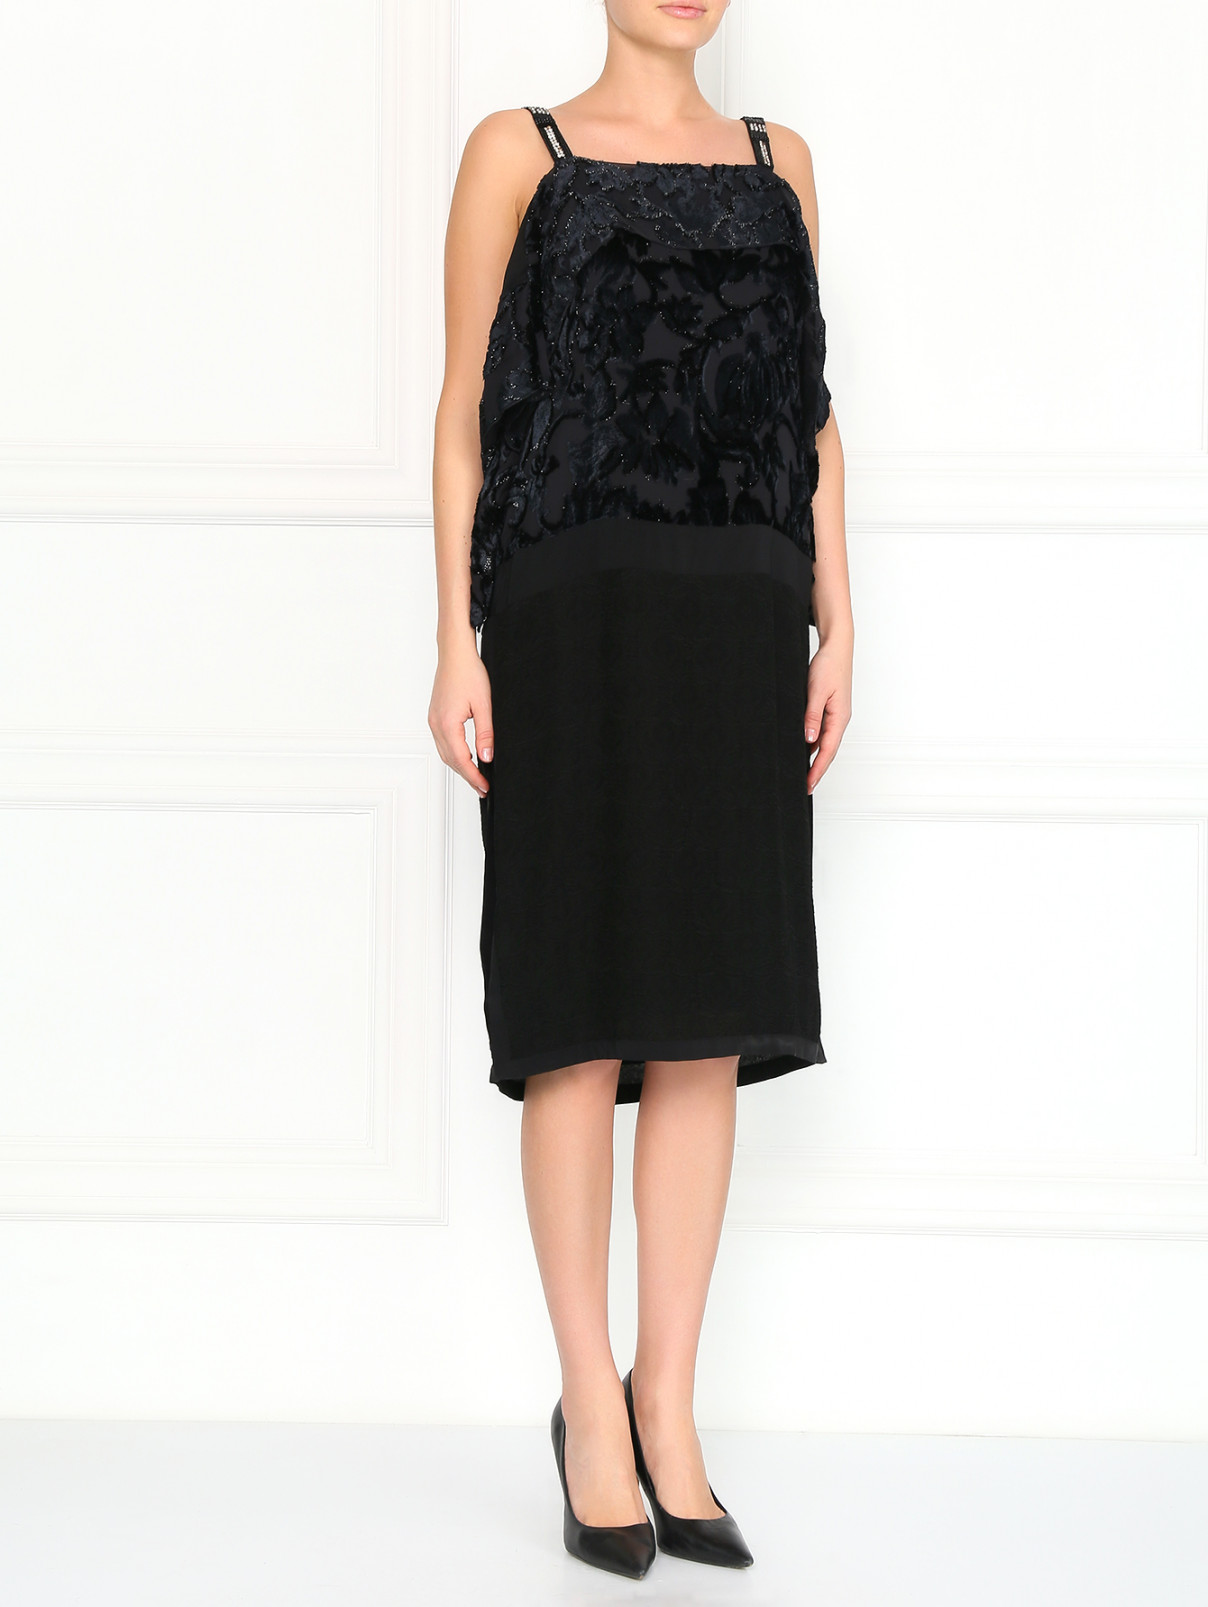 Платье из фактурной ткани декорированное бисером Antonio Marras  –  Модель Общий вид  – Цвет:  Черный